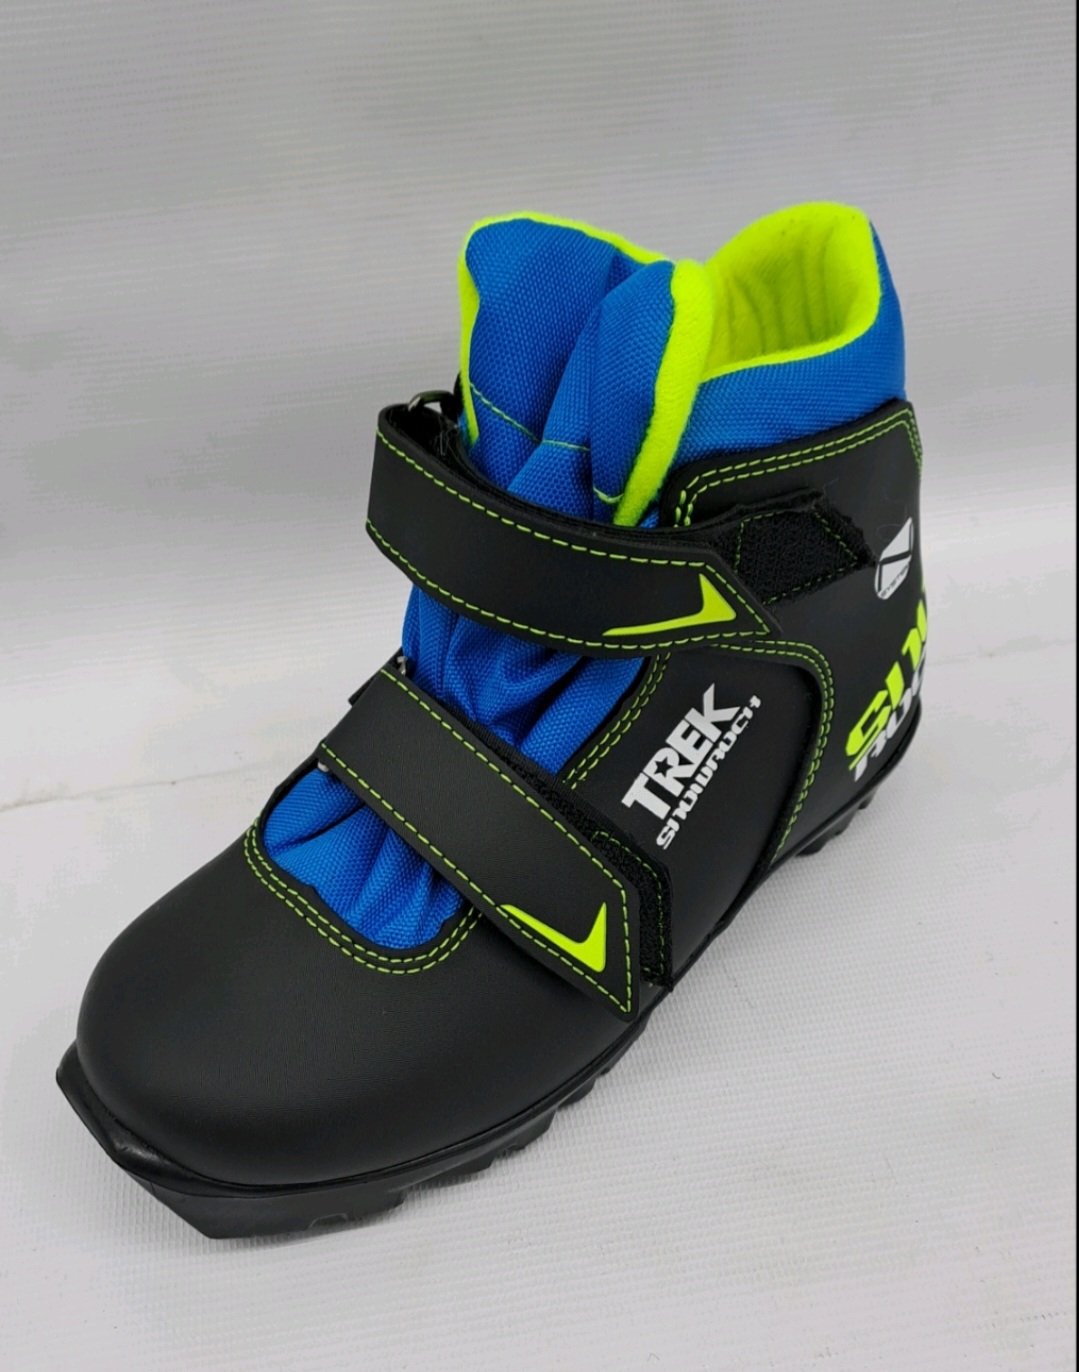 Ботинки лыжные детские TREK Snowrock1 черный лого лайм лимон RU35, EU36, CM22,5                            